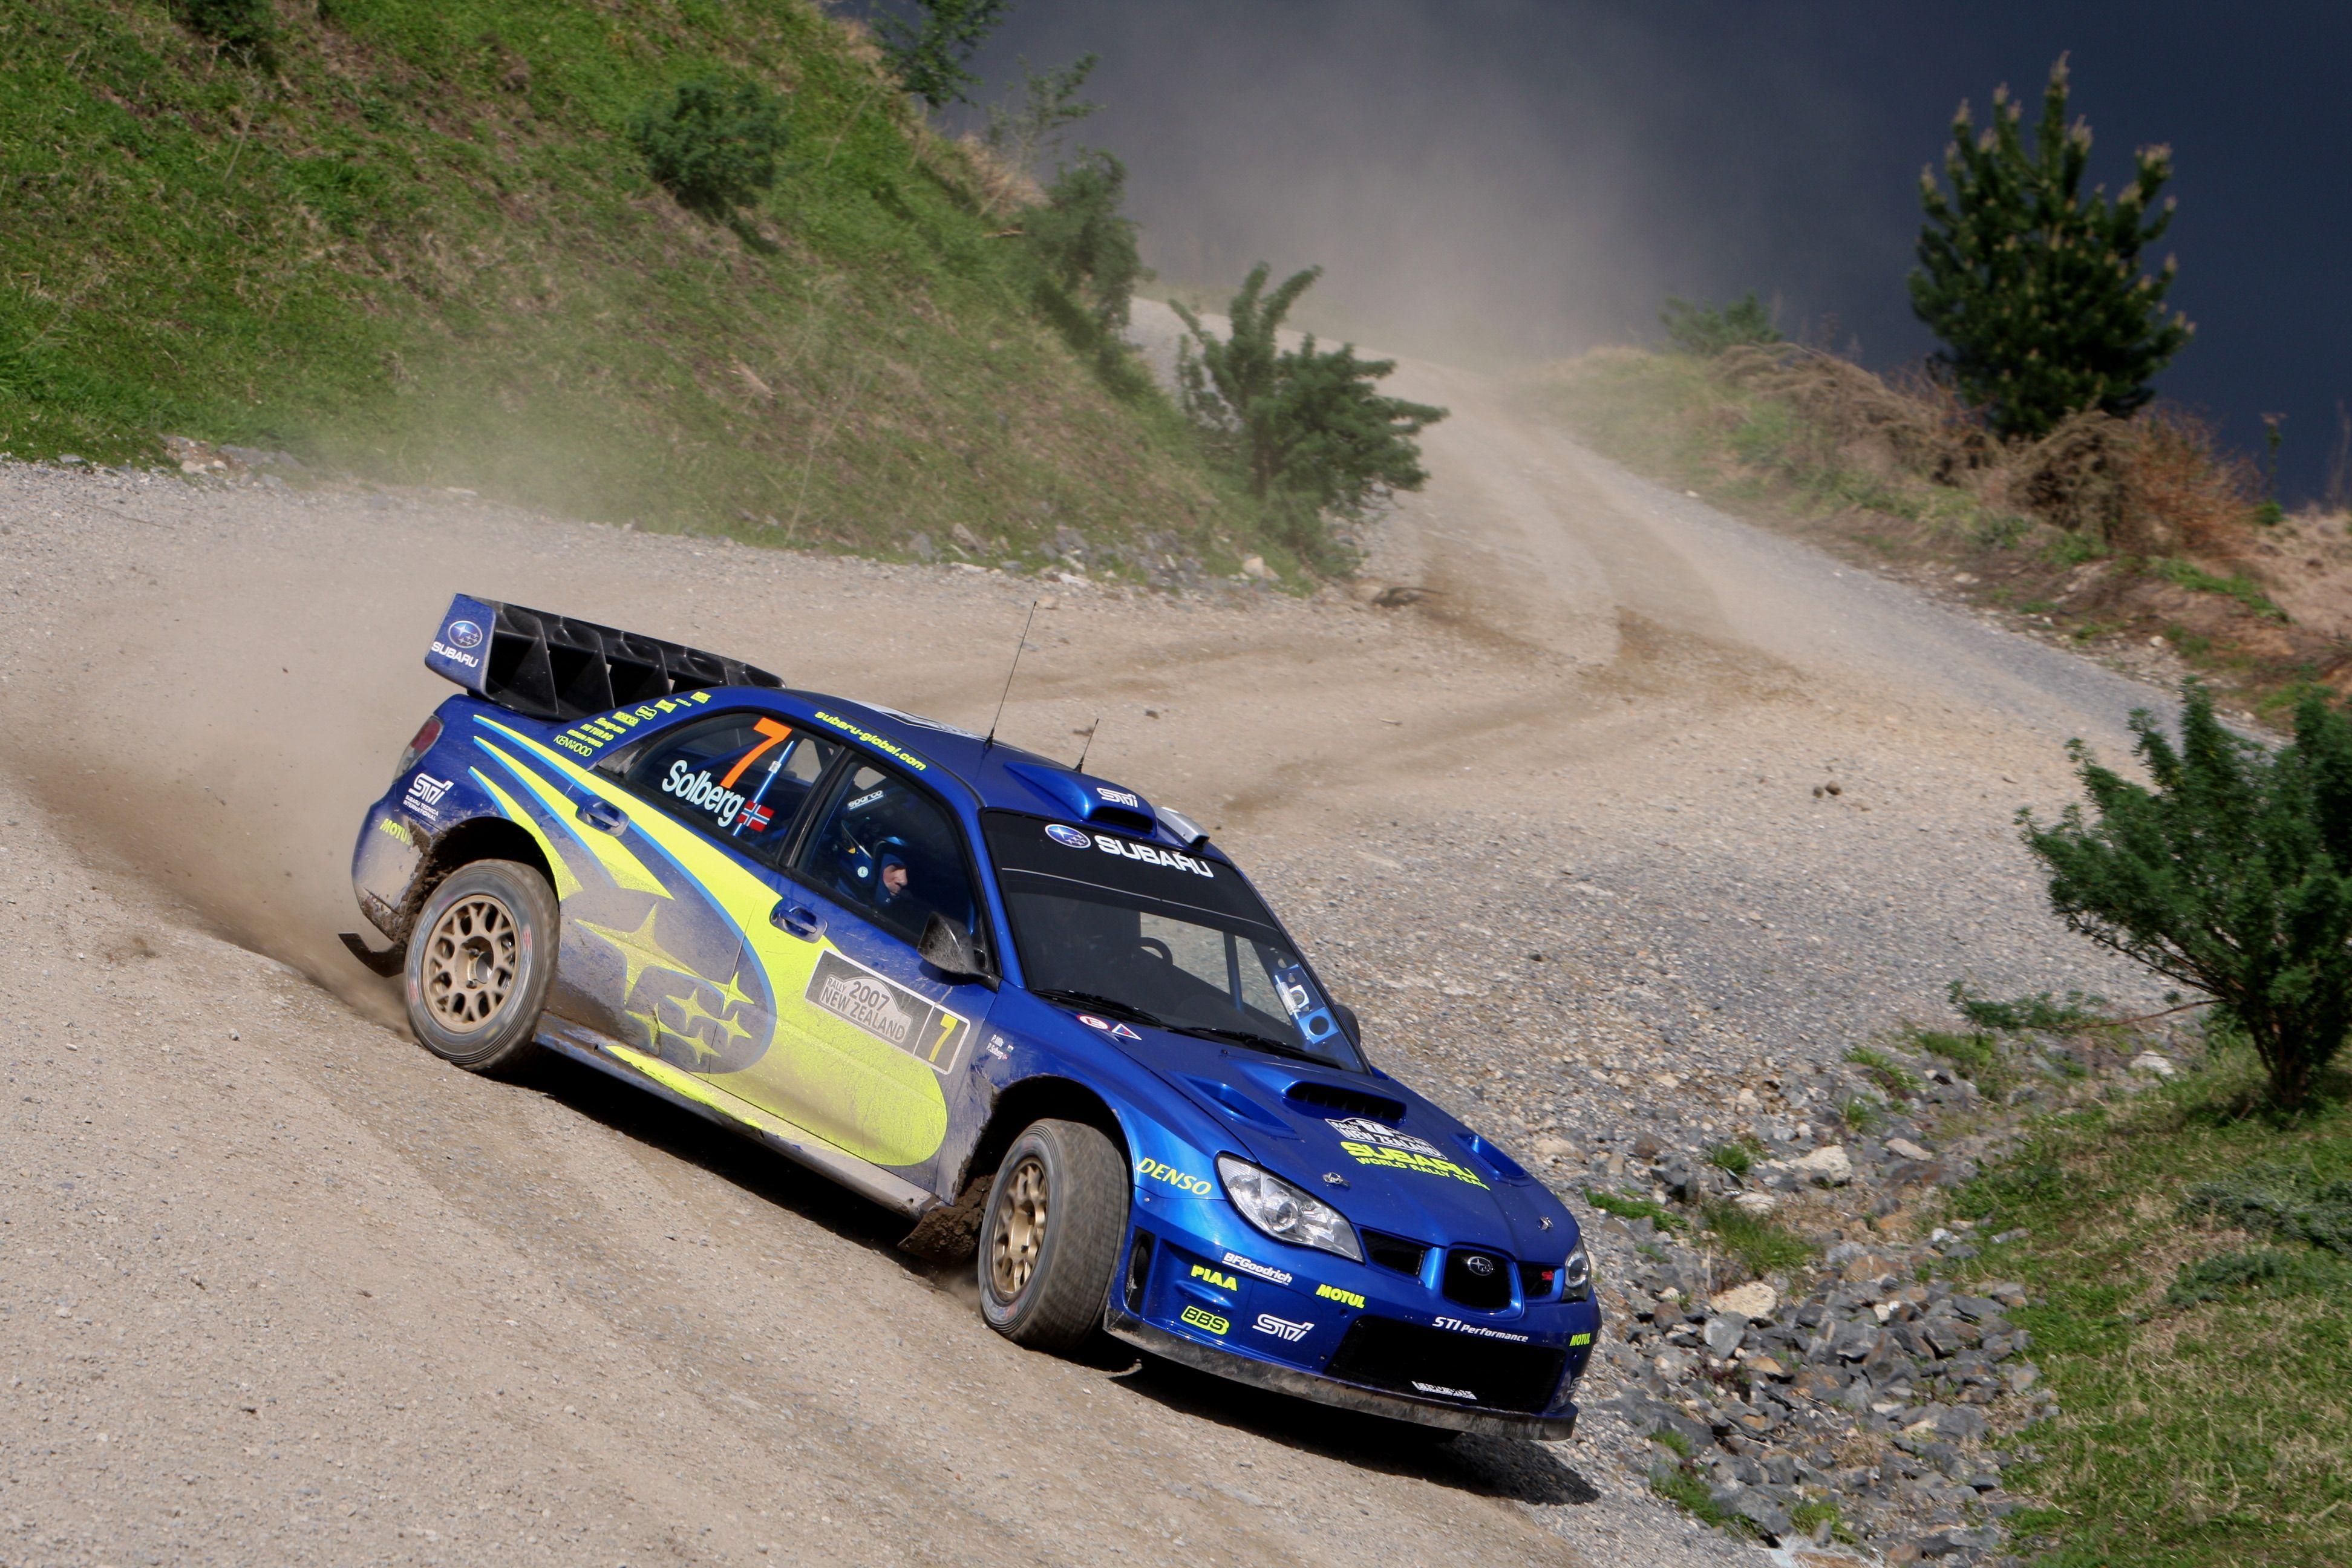 Subaru Rally Wallpapers - Top Free Subaru Rally ...